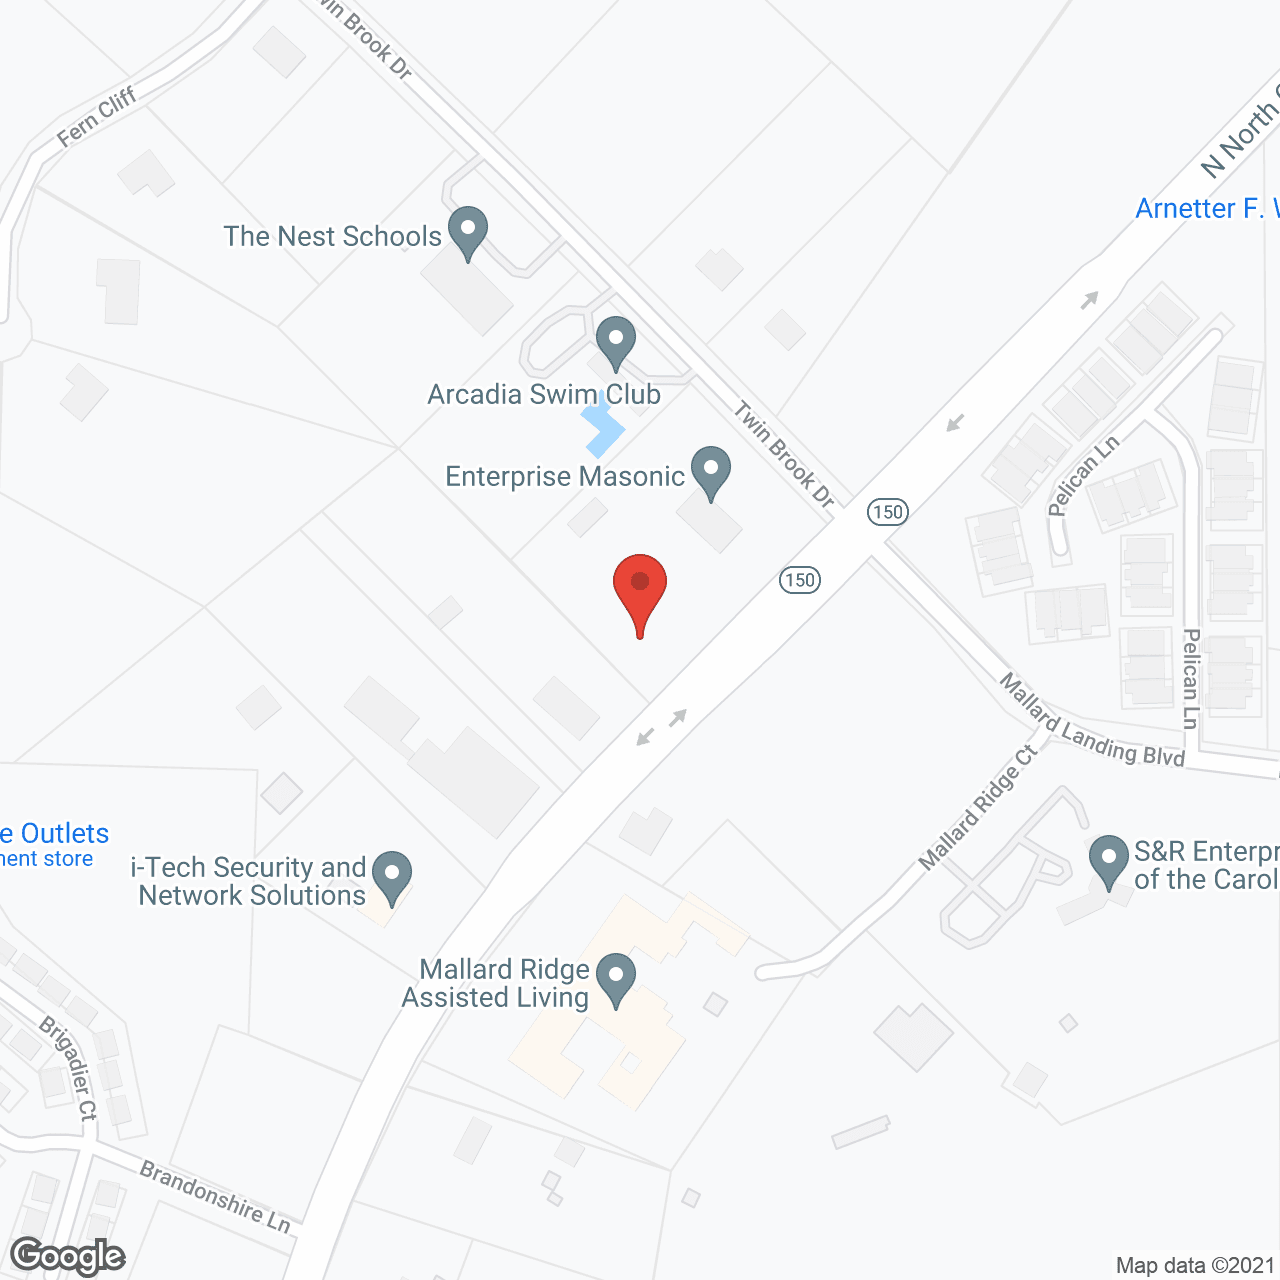 Mallard Ridge in google map